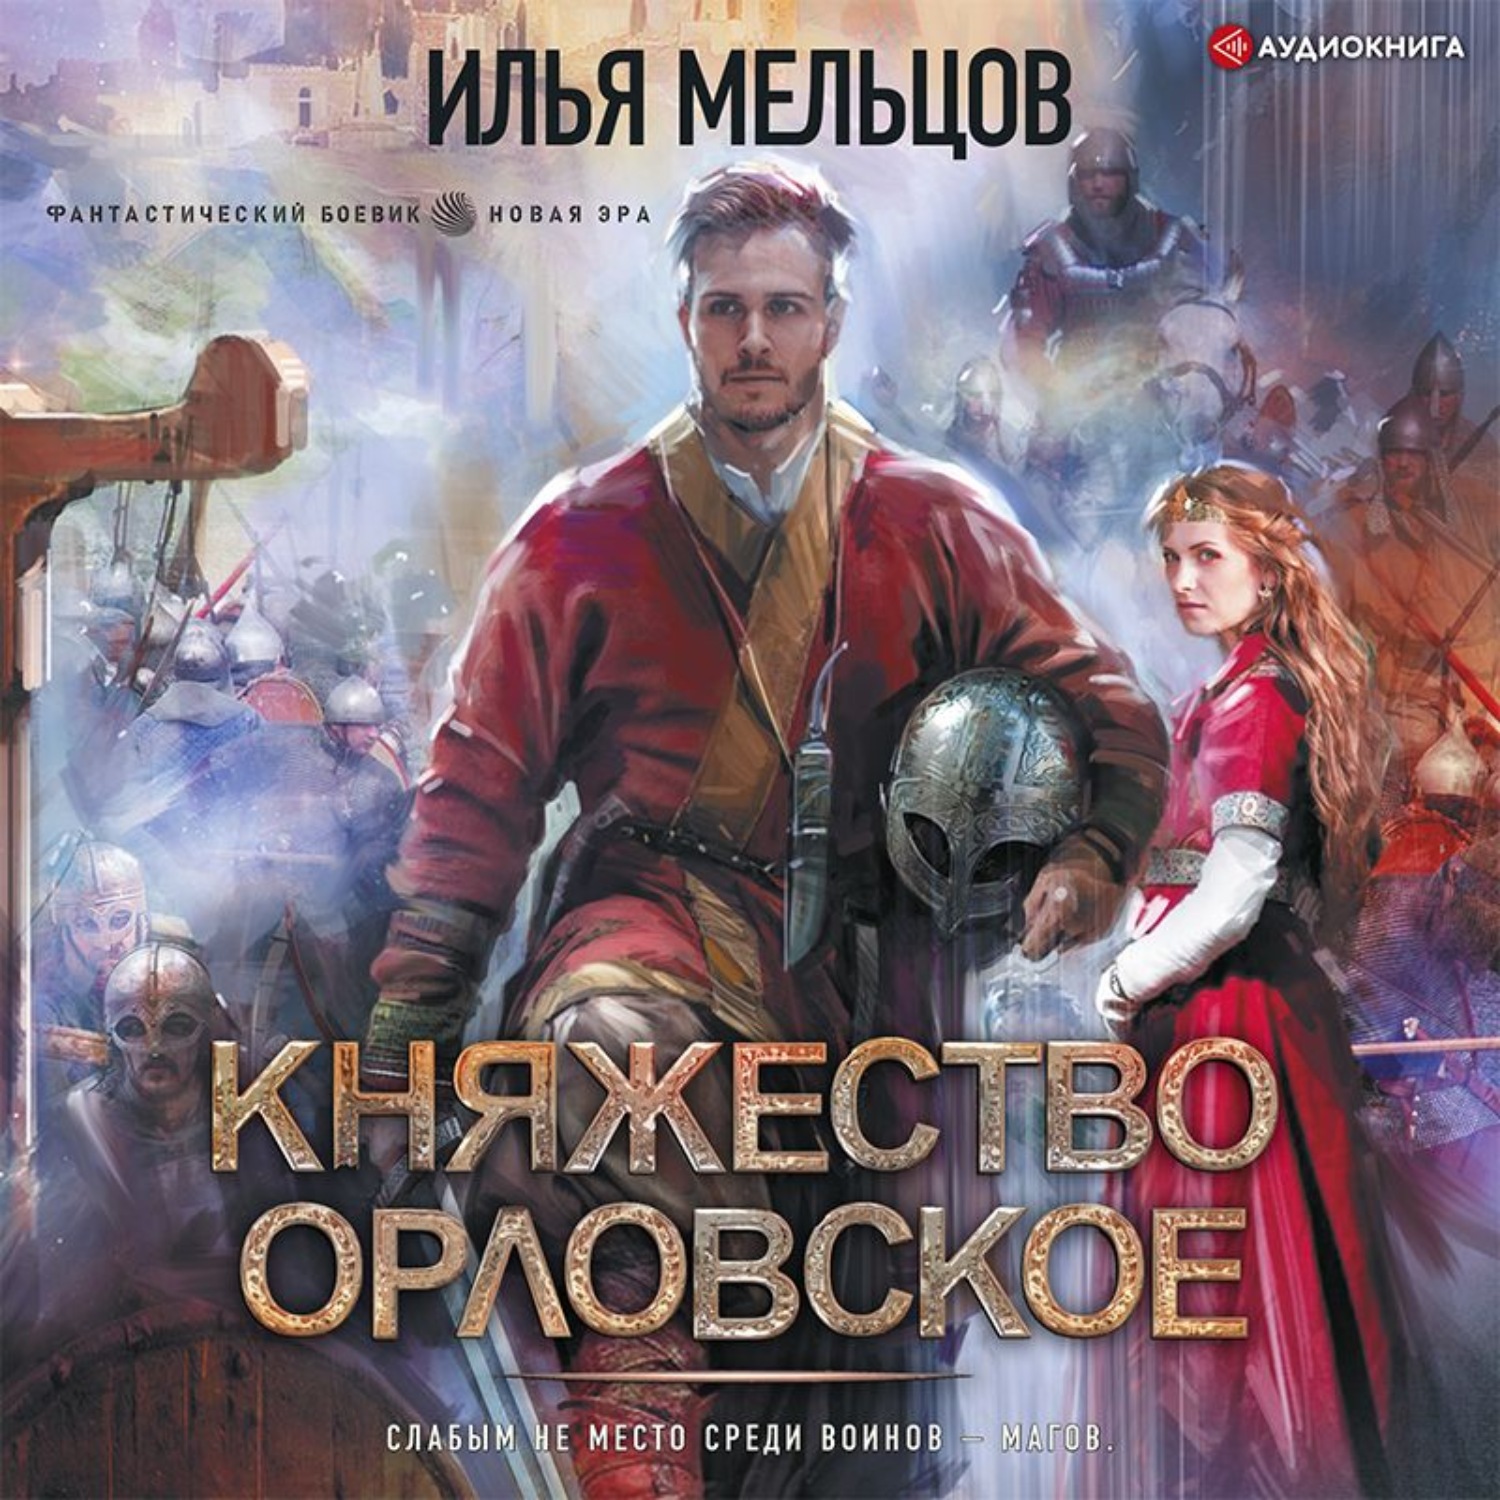 Мельцов Илья - княжество Орловское